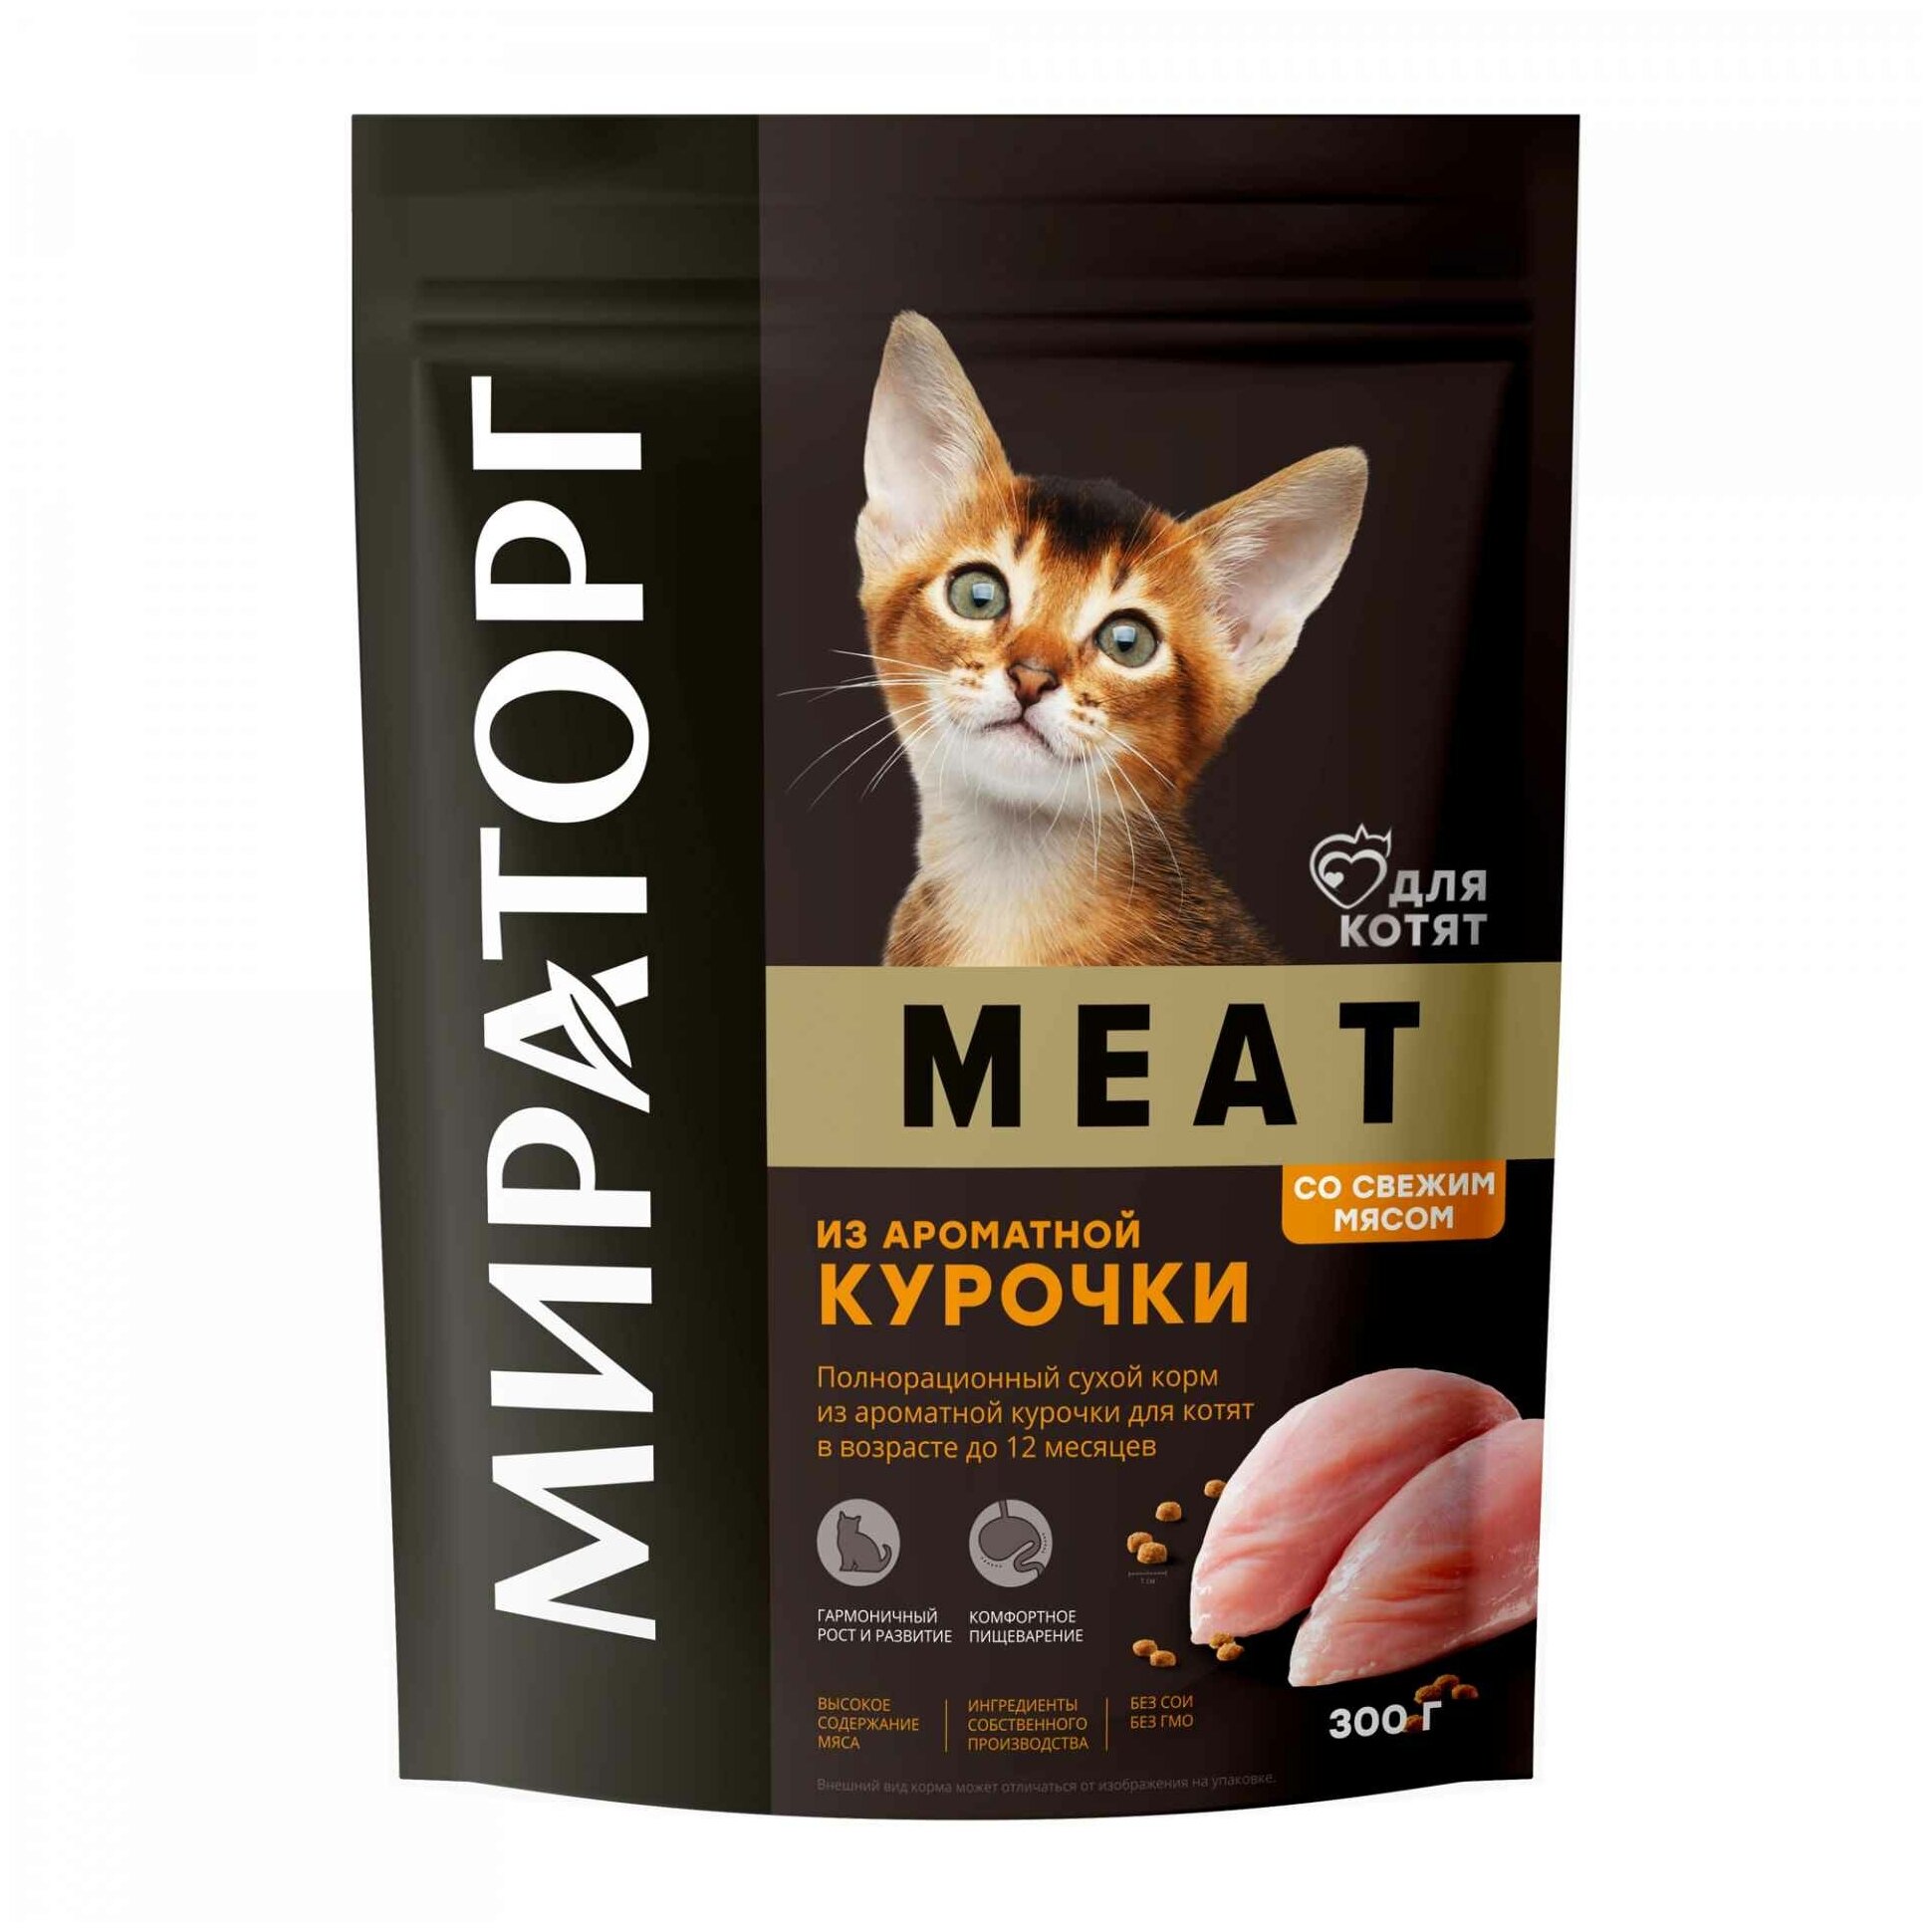 Полнорационный сухой корм Мираторг Winner MEAT из ароматной курочки для котят в возрасте до 12 месяцев, 300 г - фотография № 3